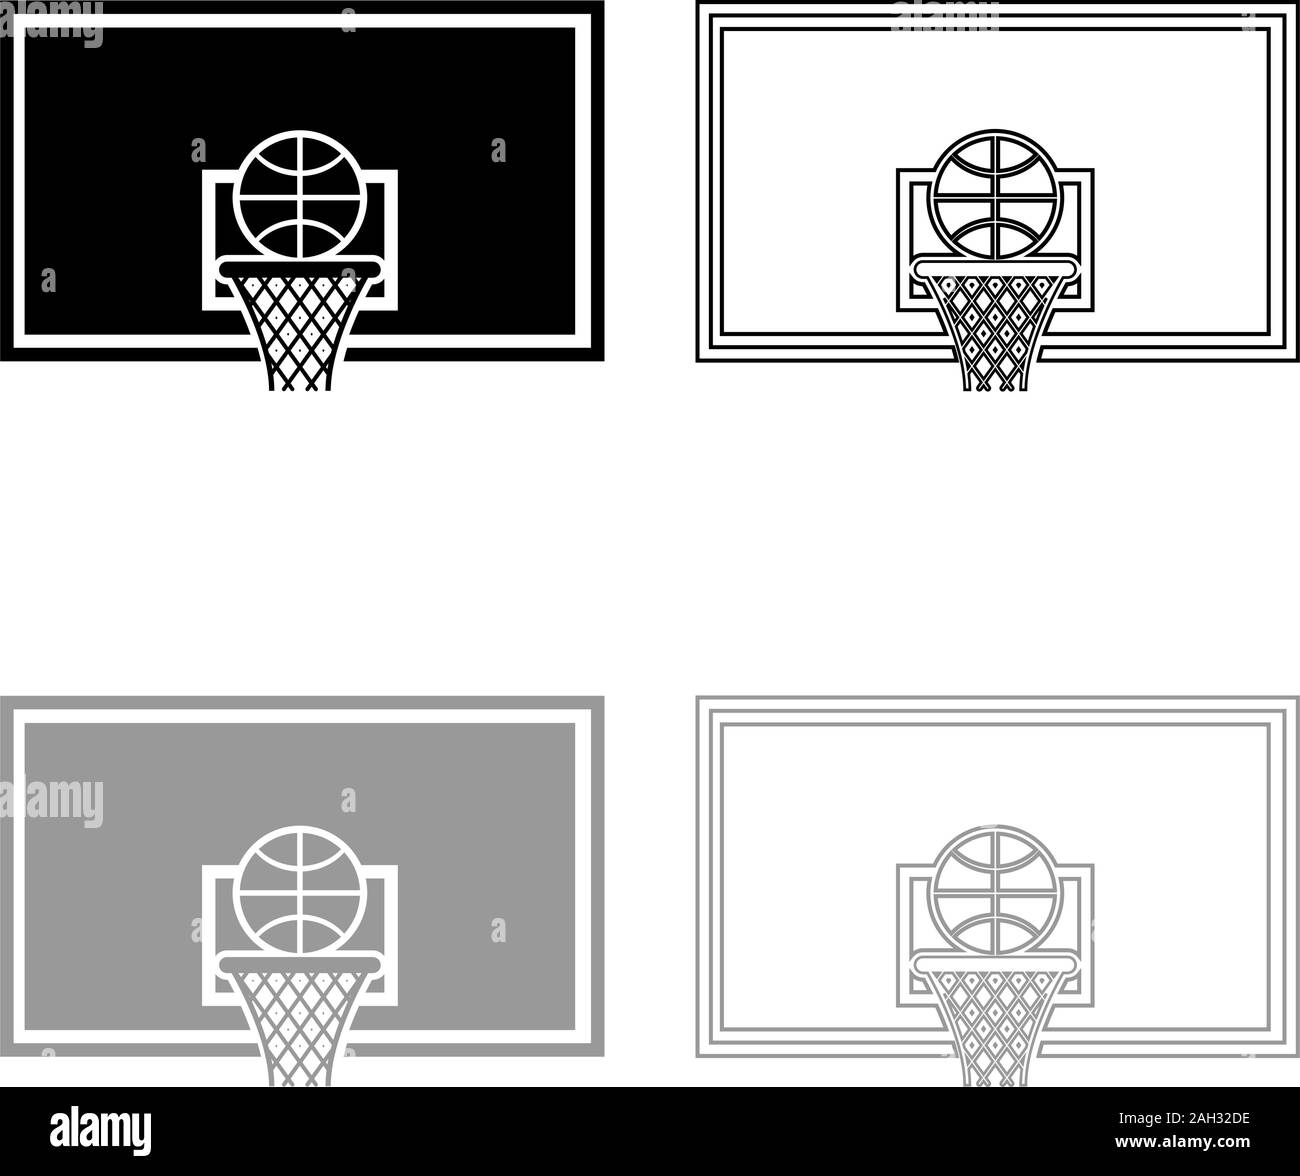 Basketball hoop e lavagna a sfera e cestello a griglia icona set di contorno nero colore grigio illustrazione vettoriale stile piatto semplice immagine Illustrazione Vettoriale